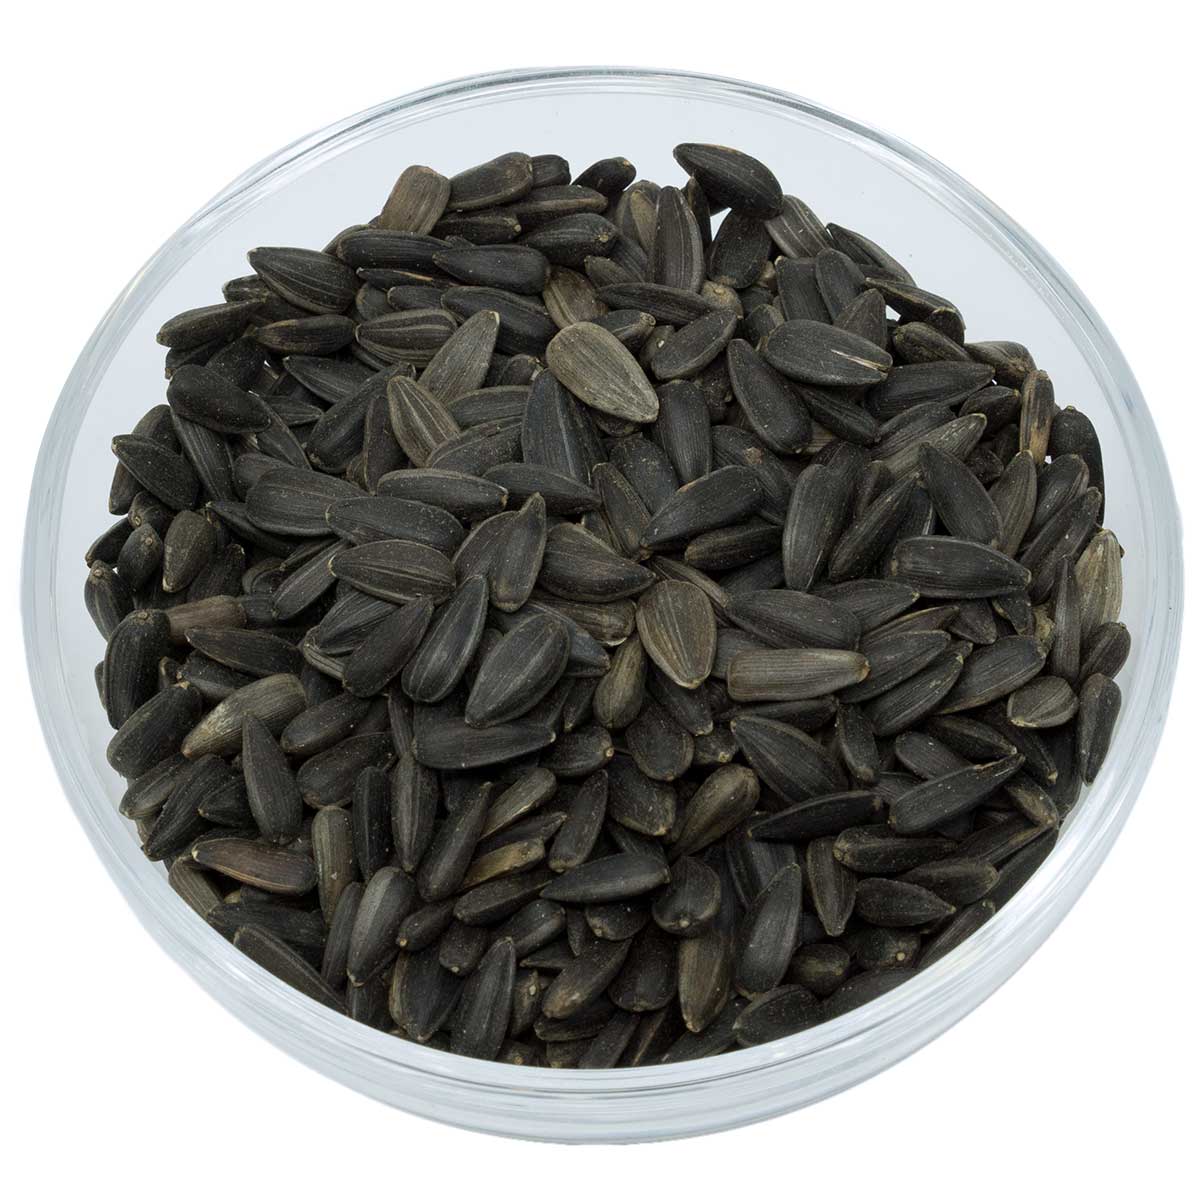 Leimüller semințe de floarea-soarelui negre 1 kg